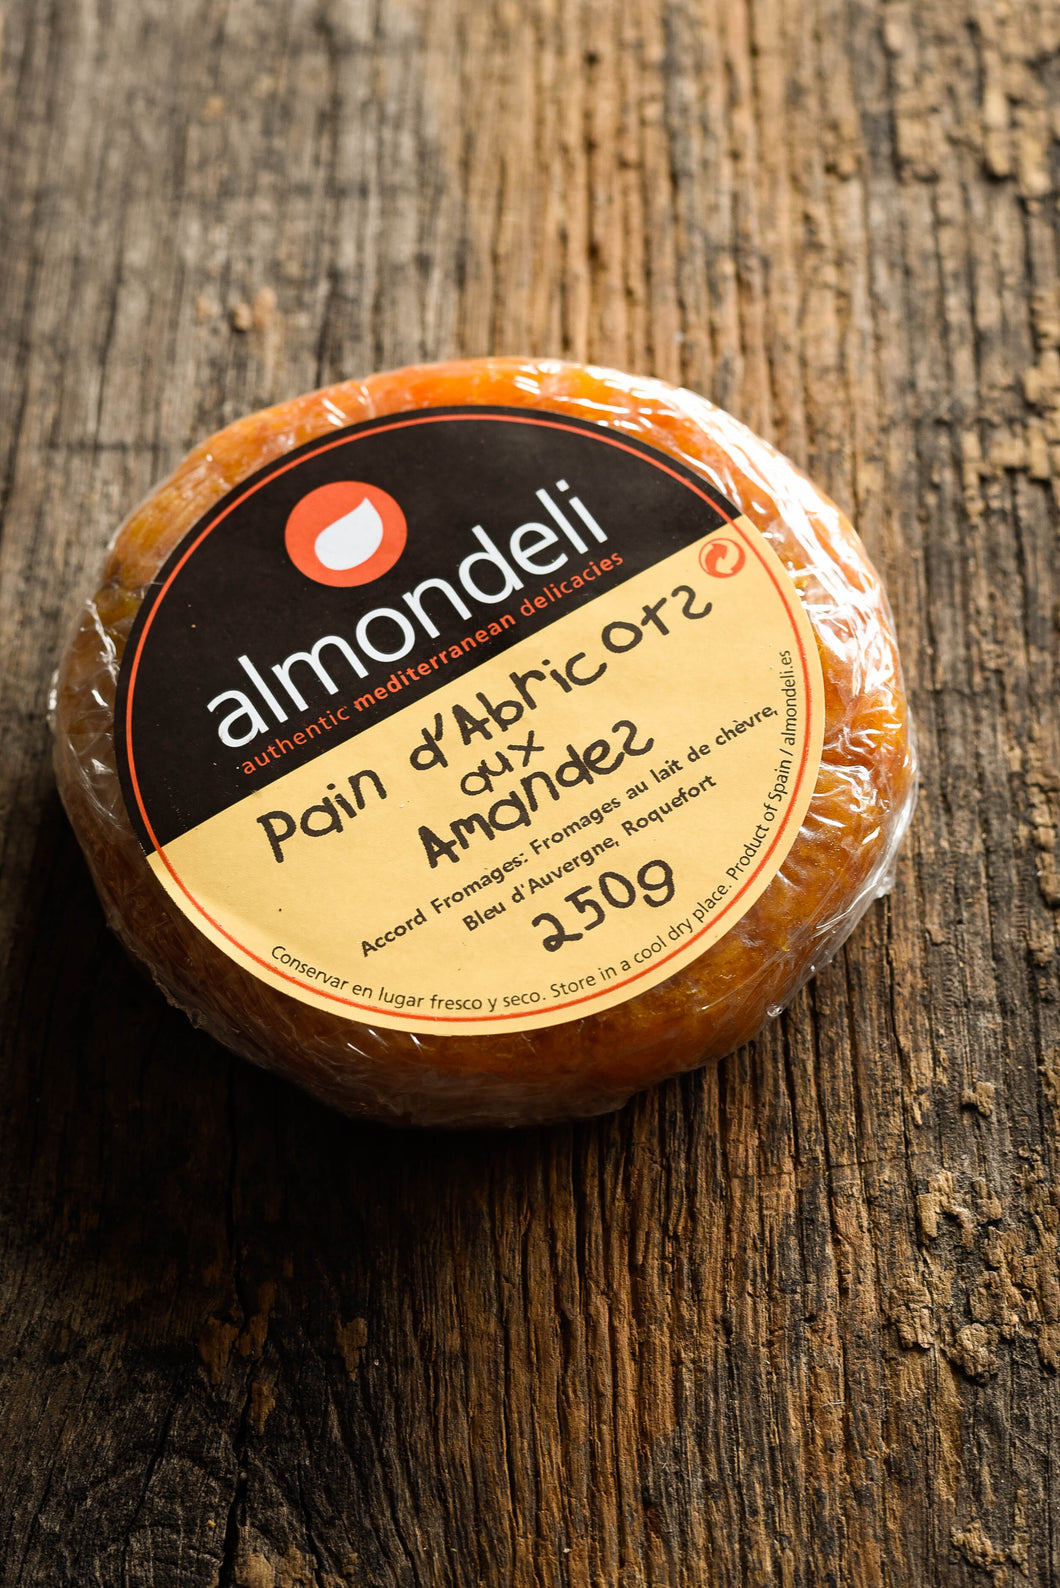 ALMONDELI - Pain d'abricots aux amandes (250g) - Les produits du soleil